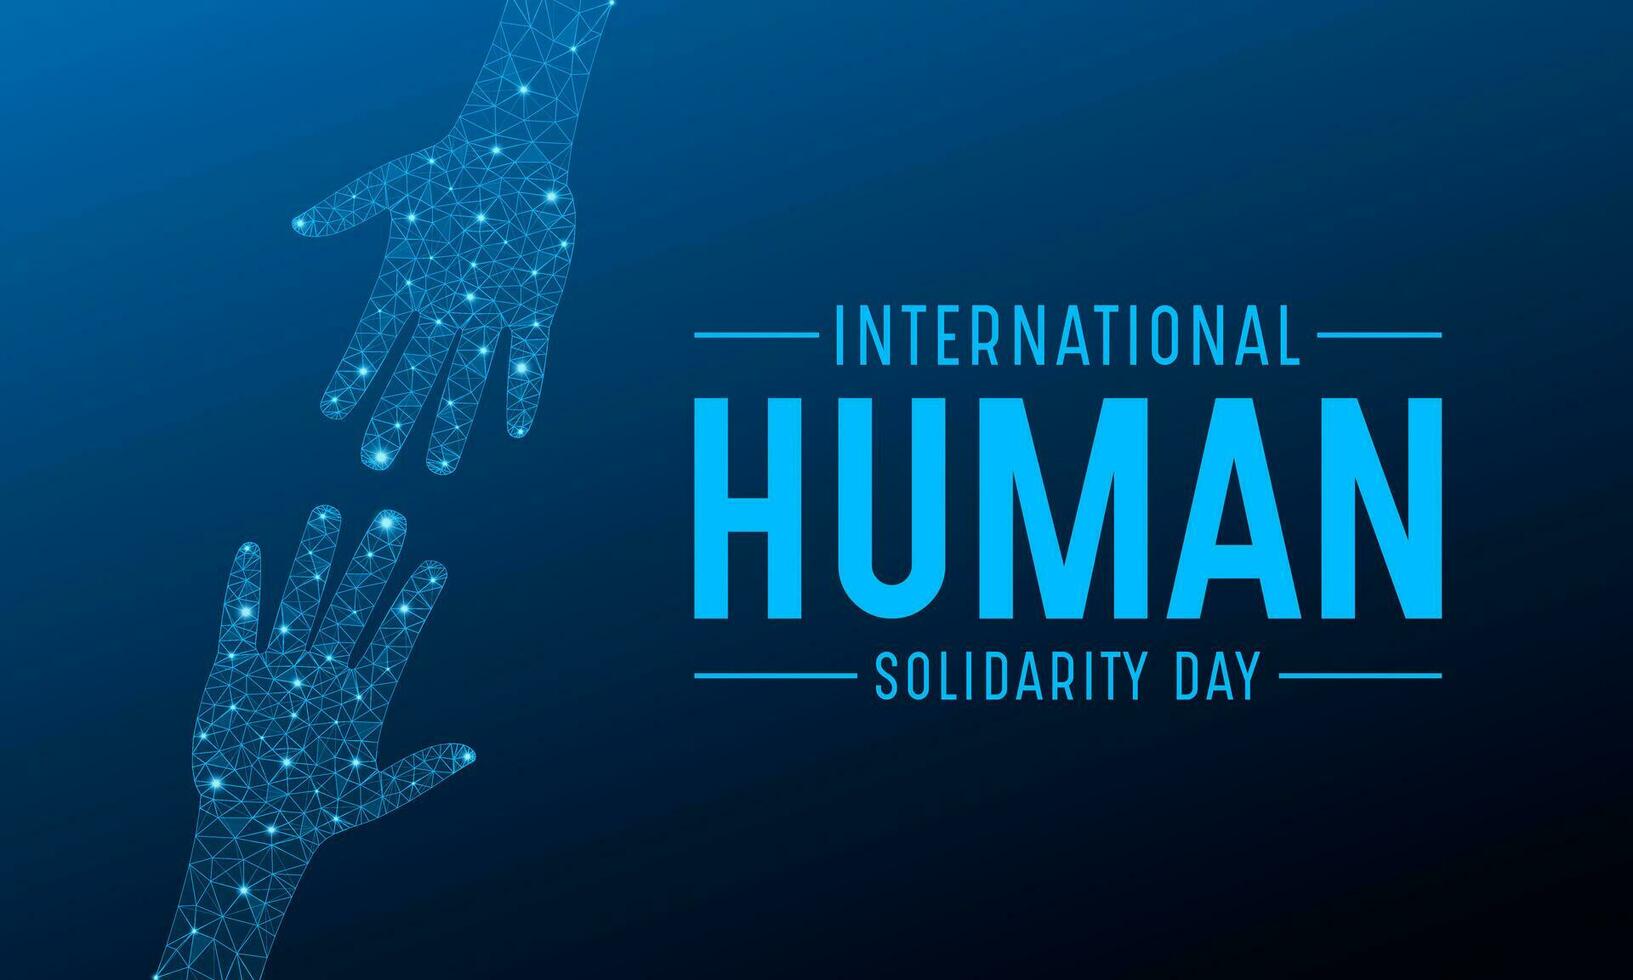 internacional humano solidariedade dia é observado cada ano em dezembro 20. vetor modelo para bandeira, cumprimento cartão, poster com fundo. vetor ilustração.